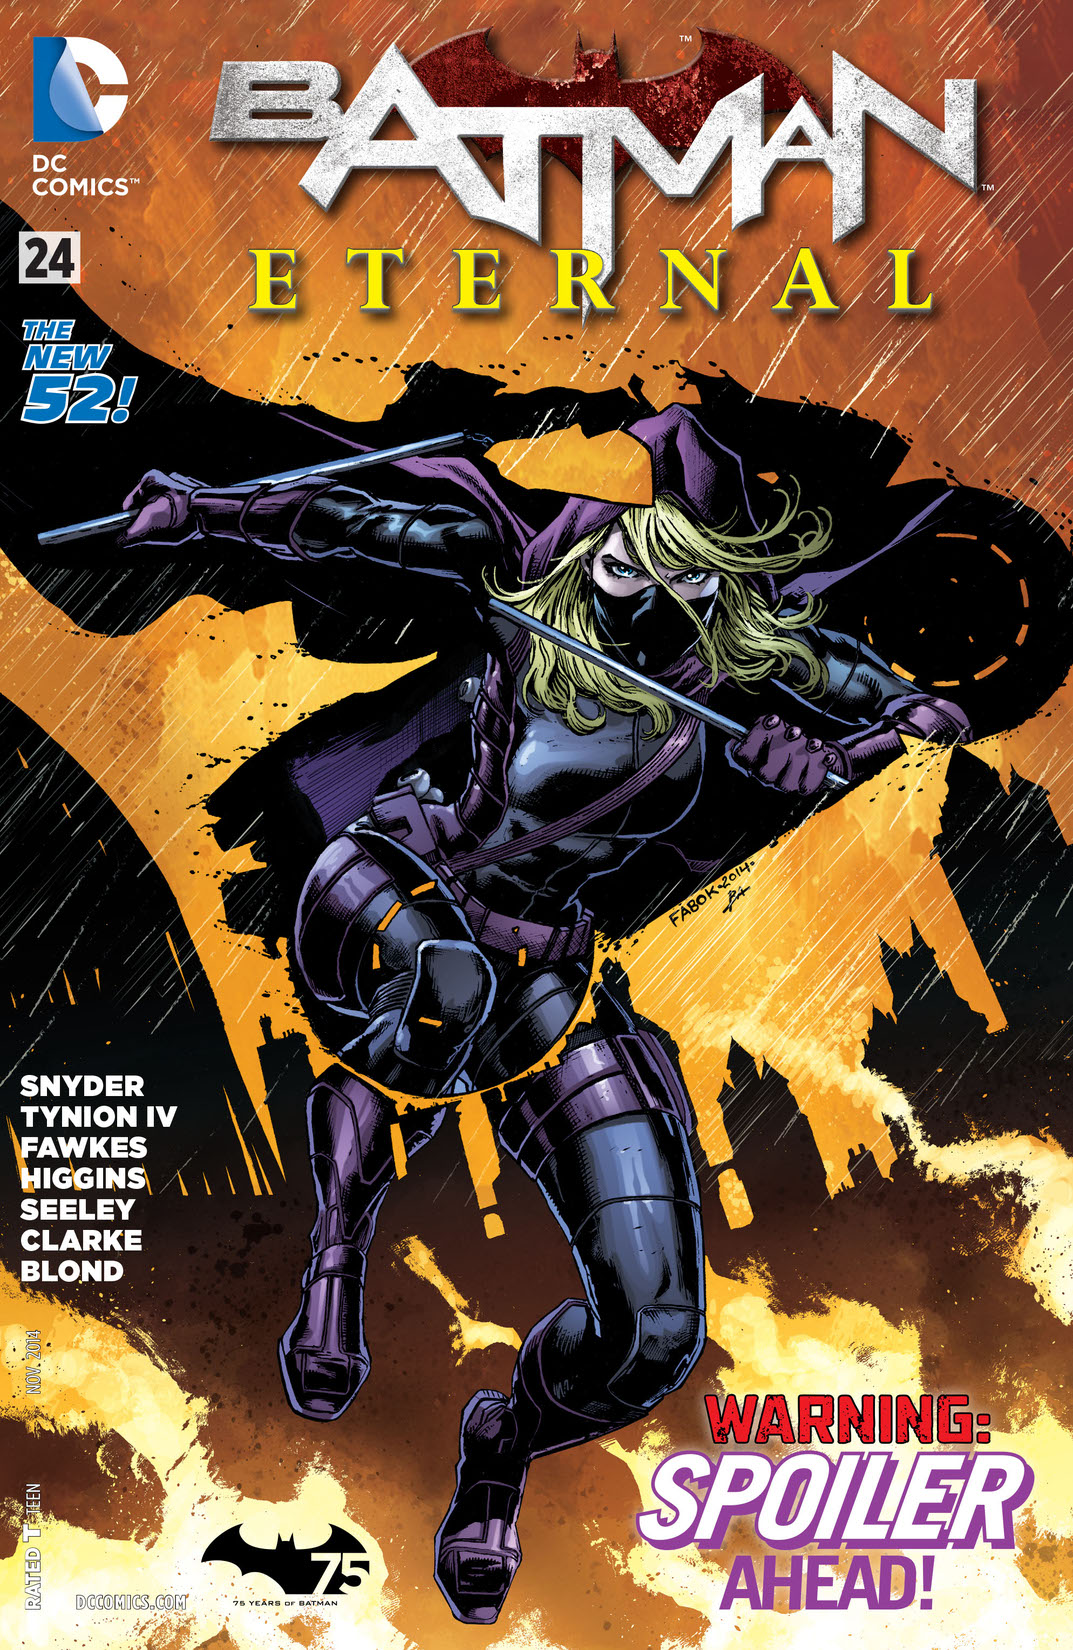 Batman Eternal #24 preview images